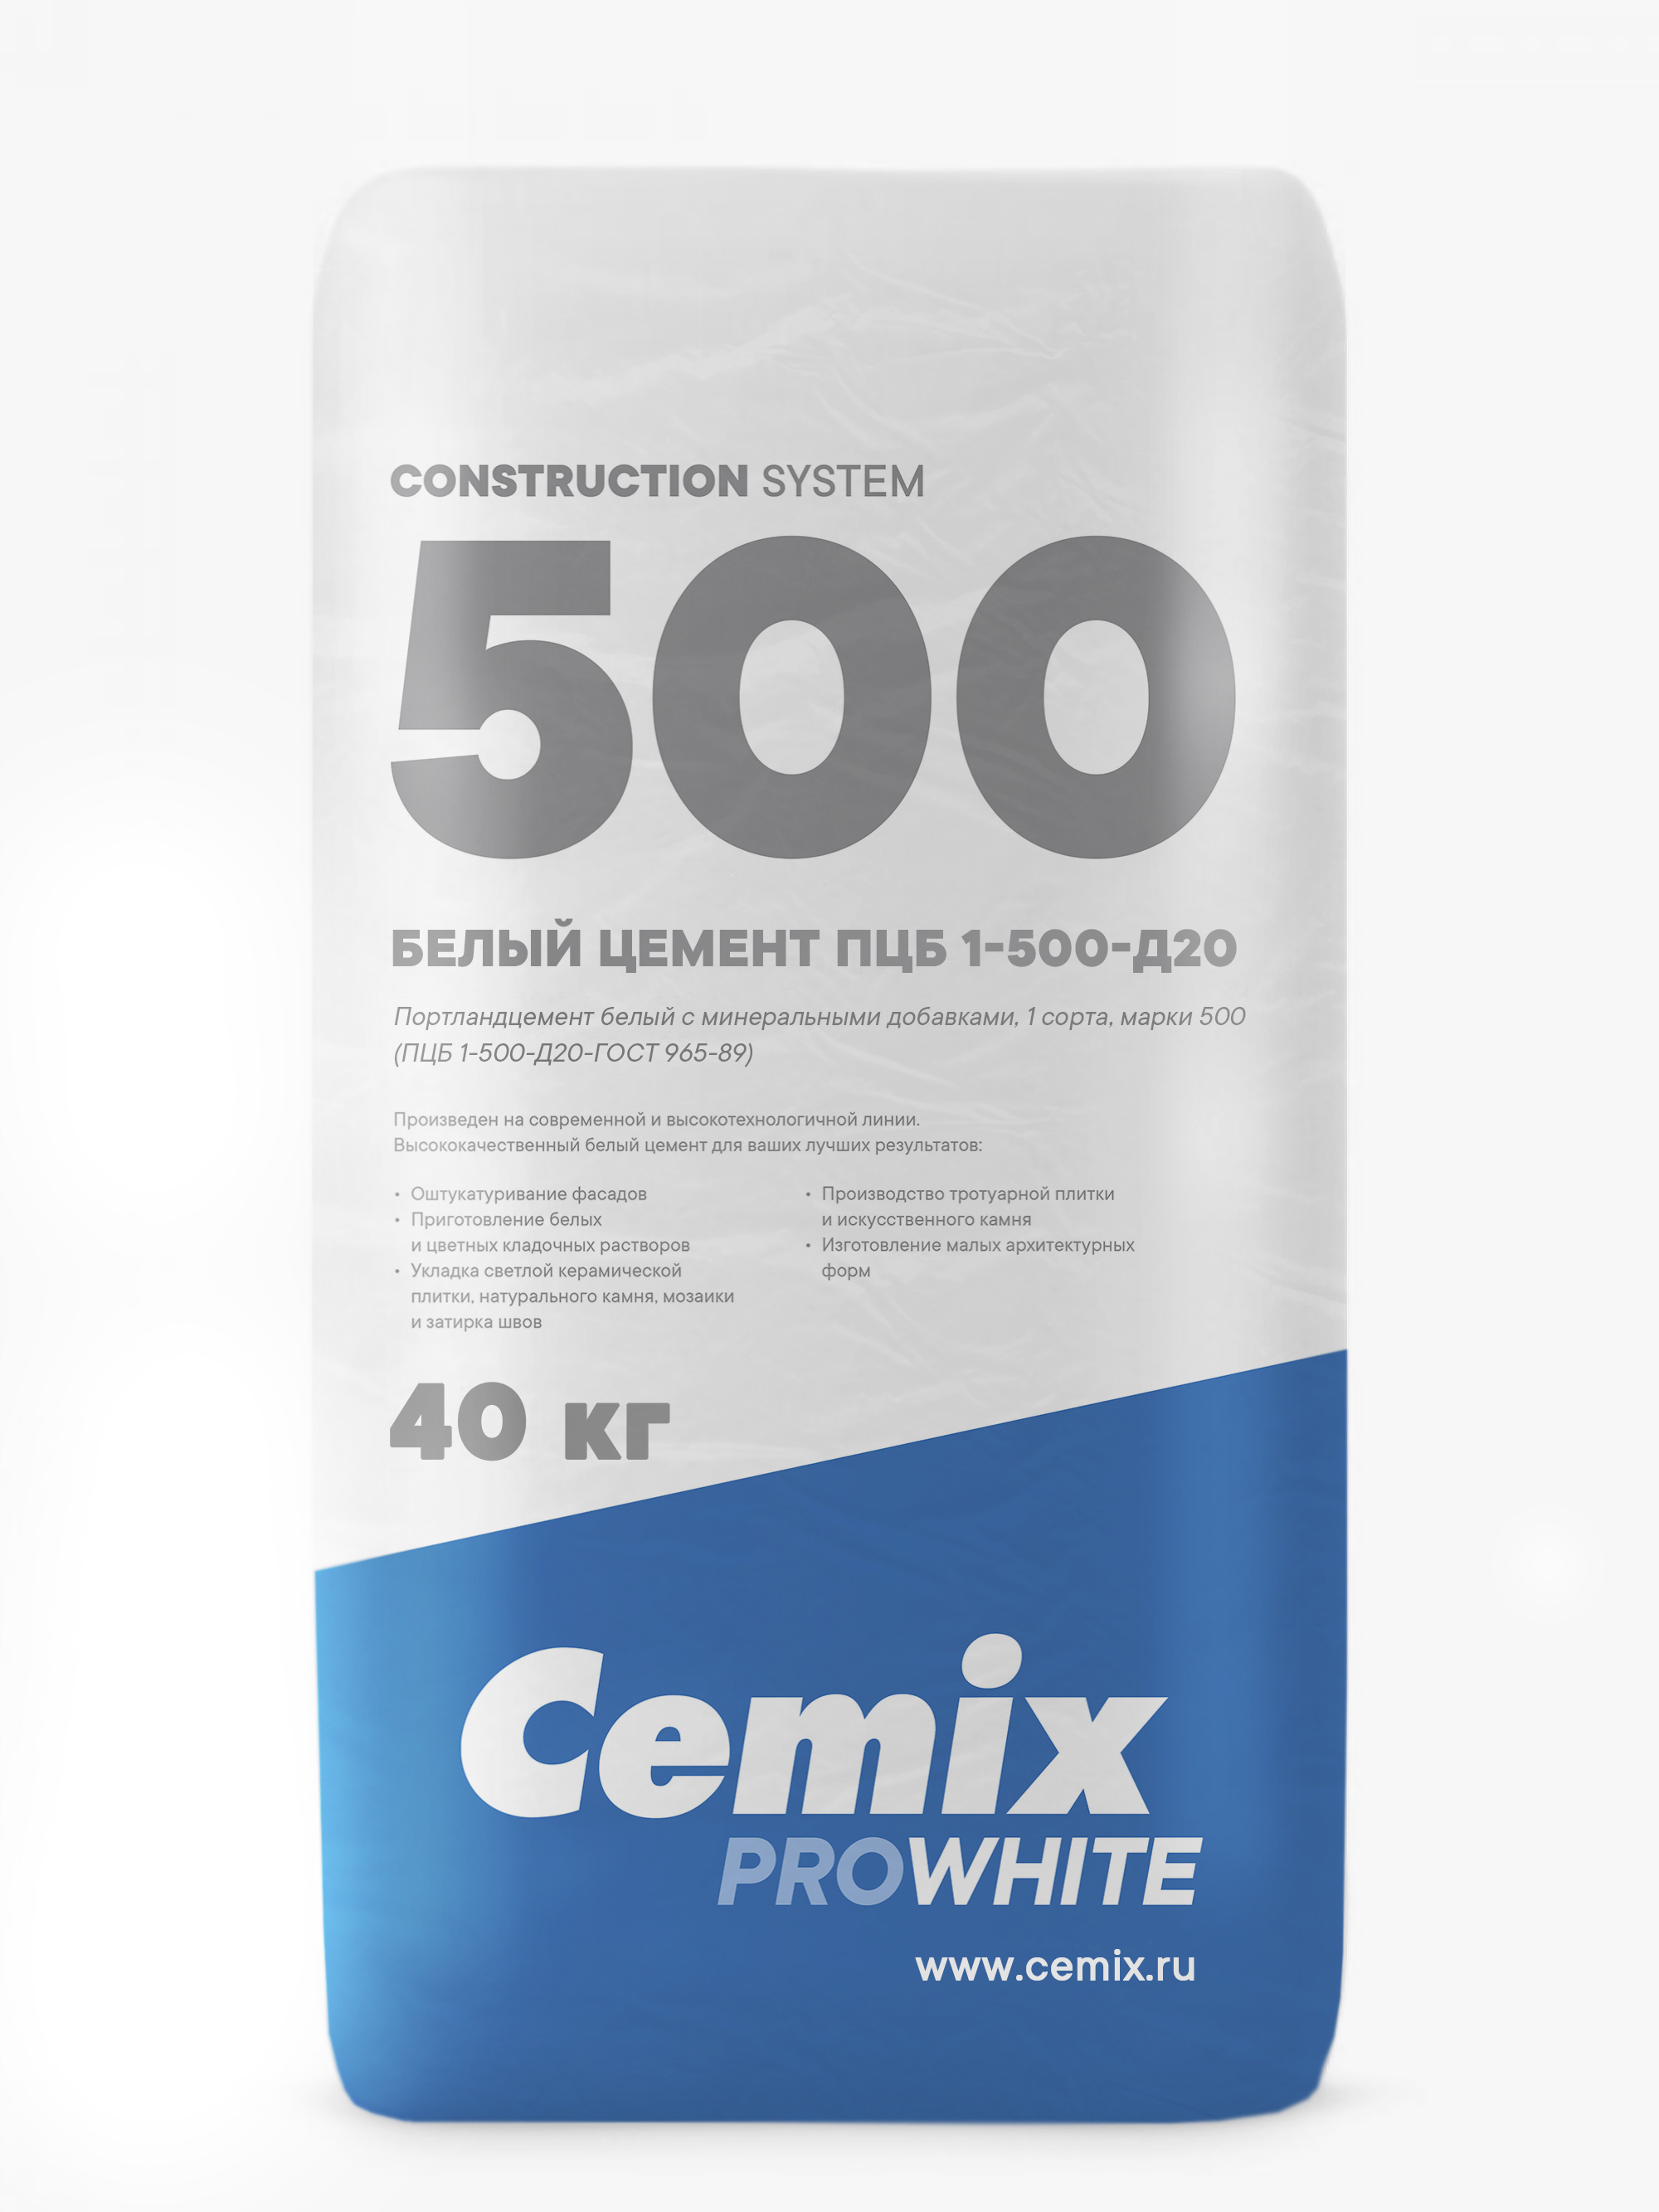 Цемент (Россия, Cemix) ПЦБ 1 - 500 -Д20 мешок 40 кг на паллете (1400кг)